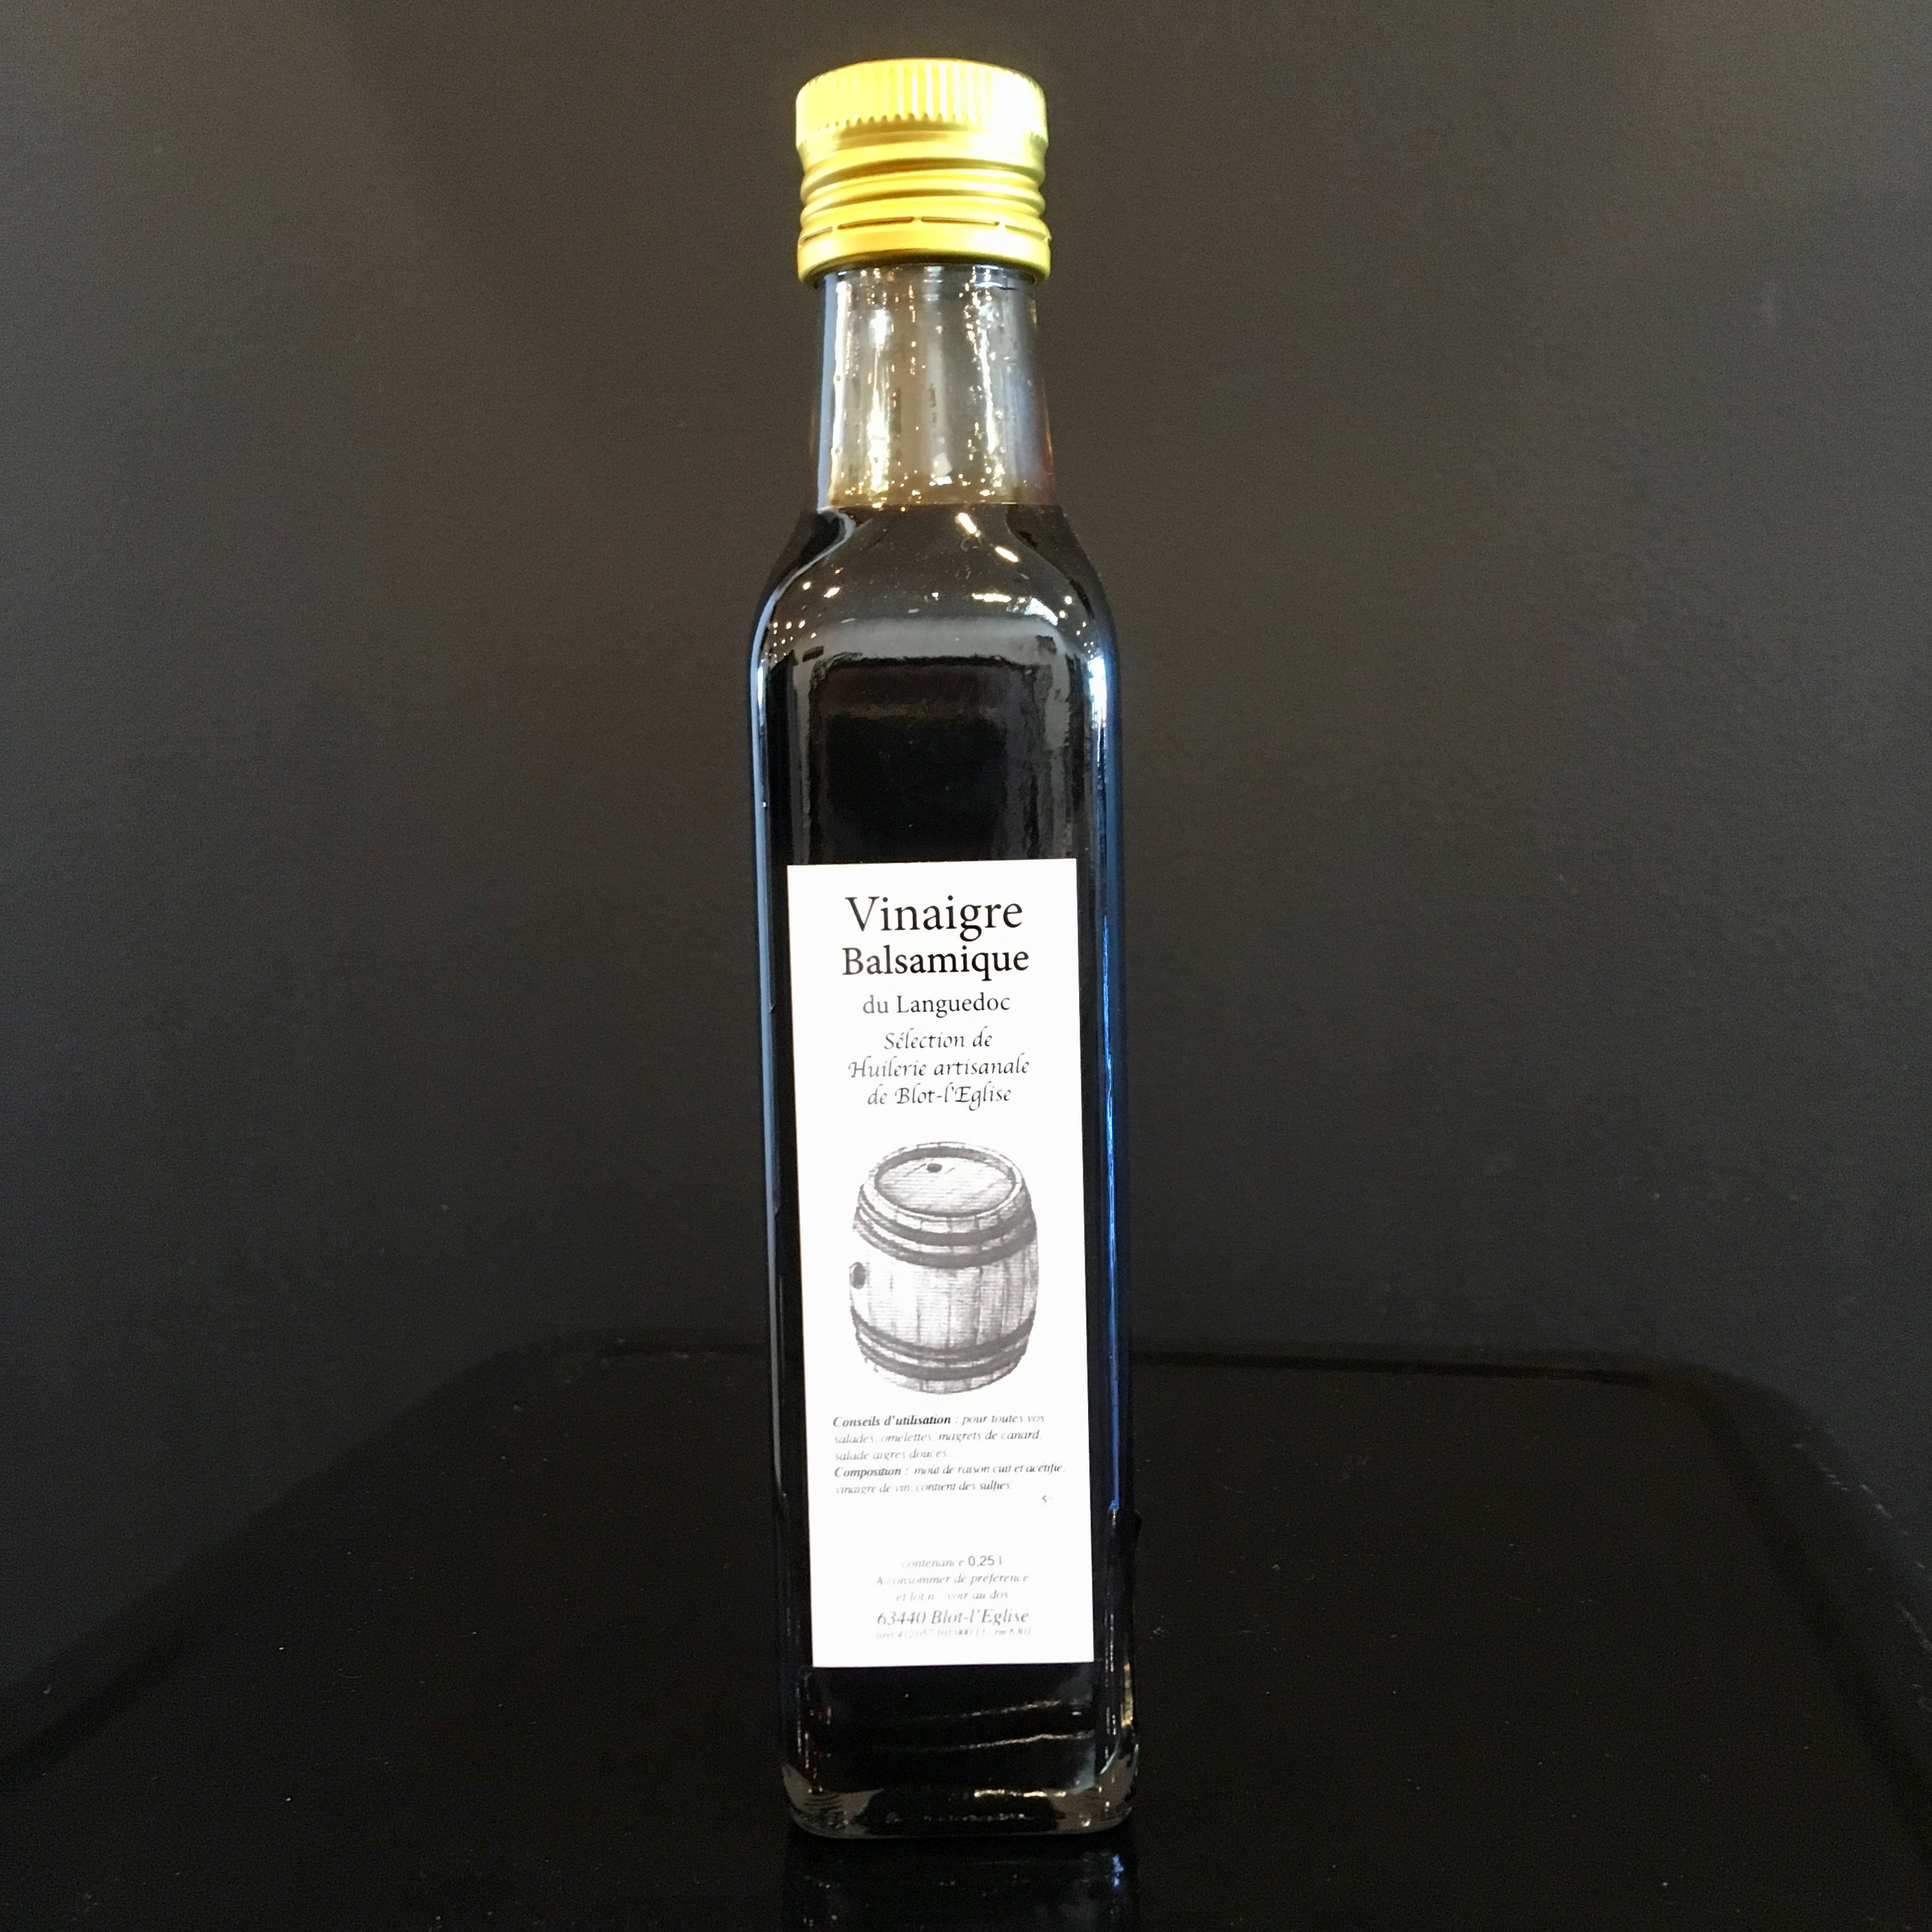 Vinaigre balsamique 25 cl - Huilerie de Blot : Picores'Y – Épicerie Aubière  : produits auvergnats, snacking